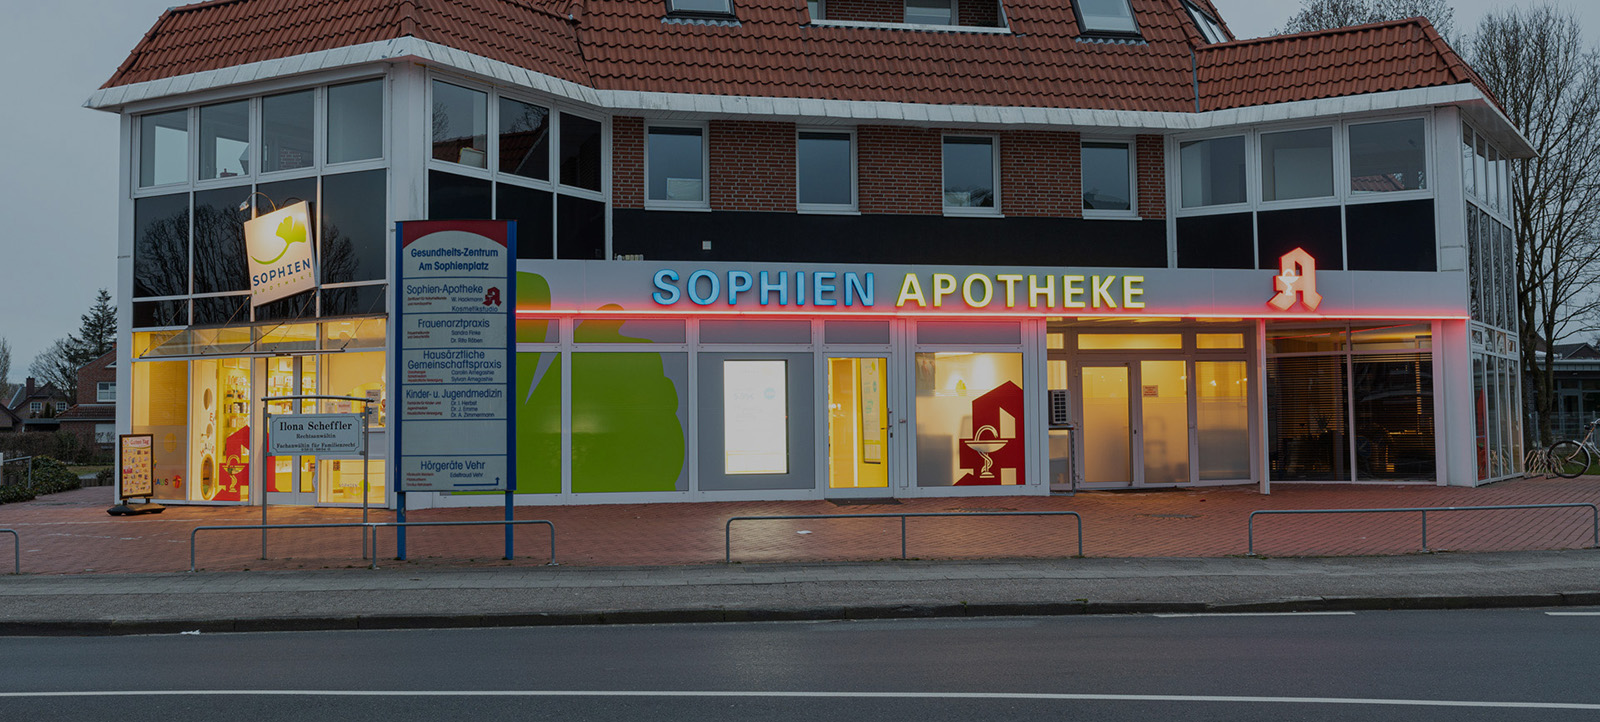 Bild der Sophien Apotheke in Meppen